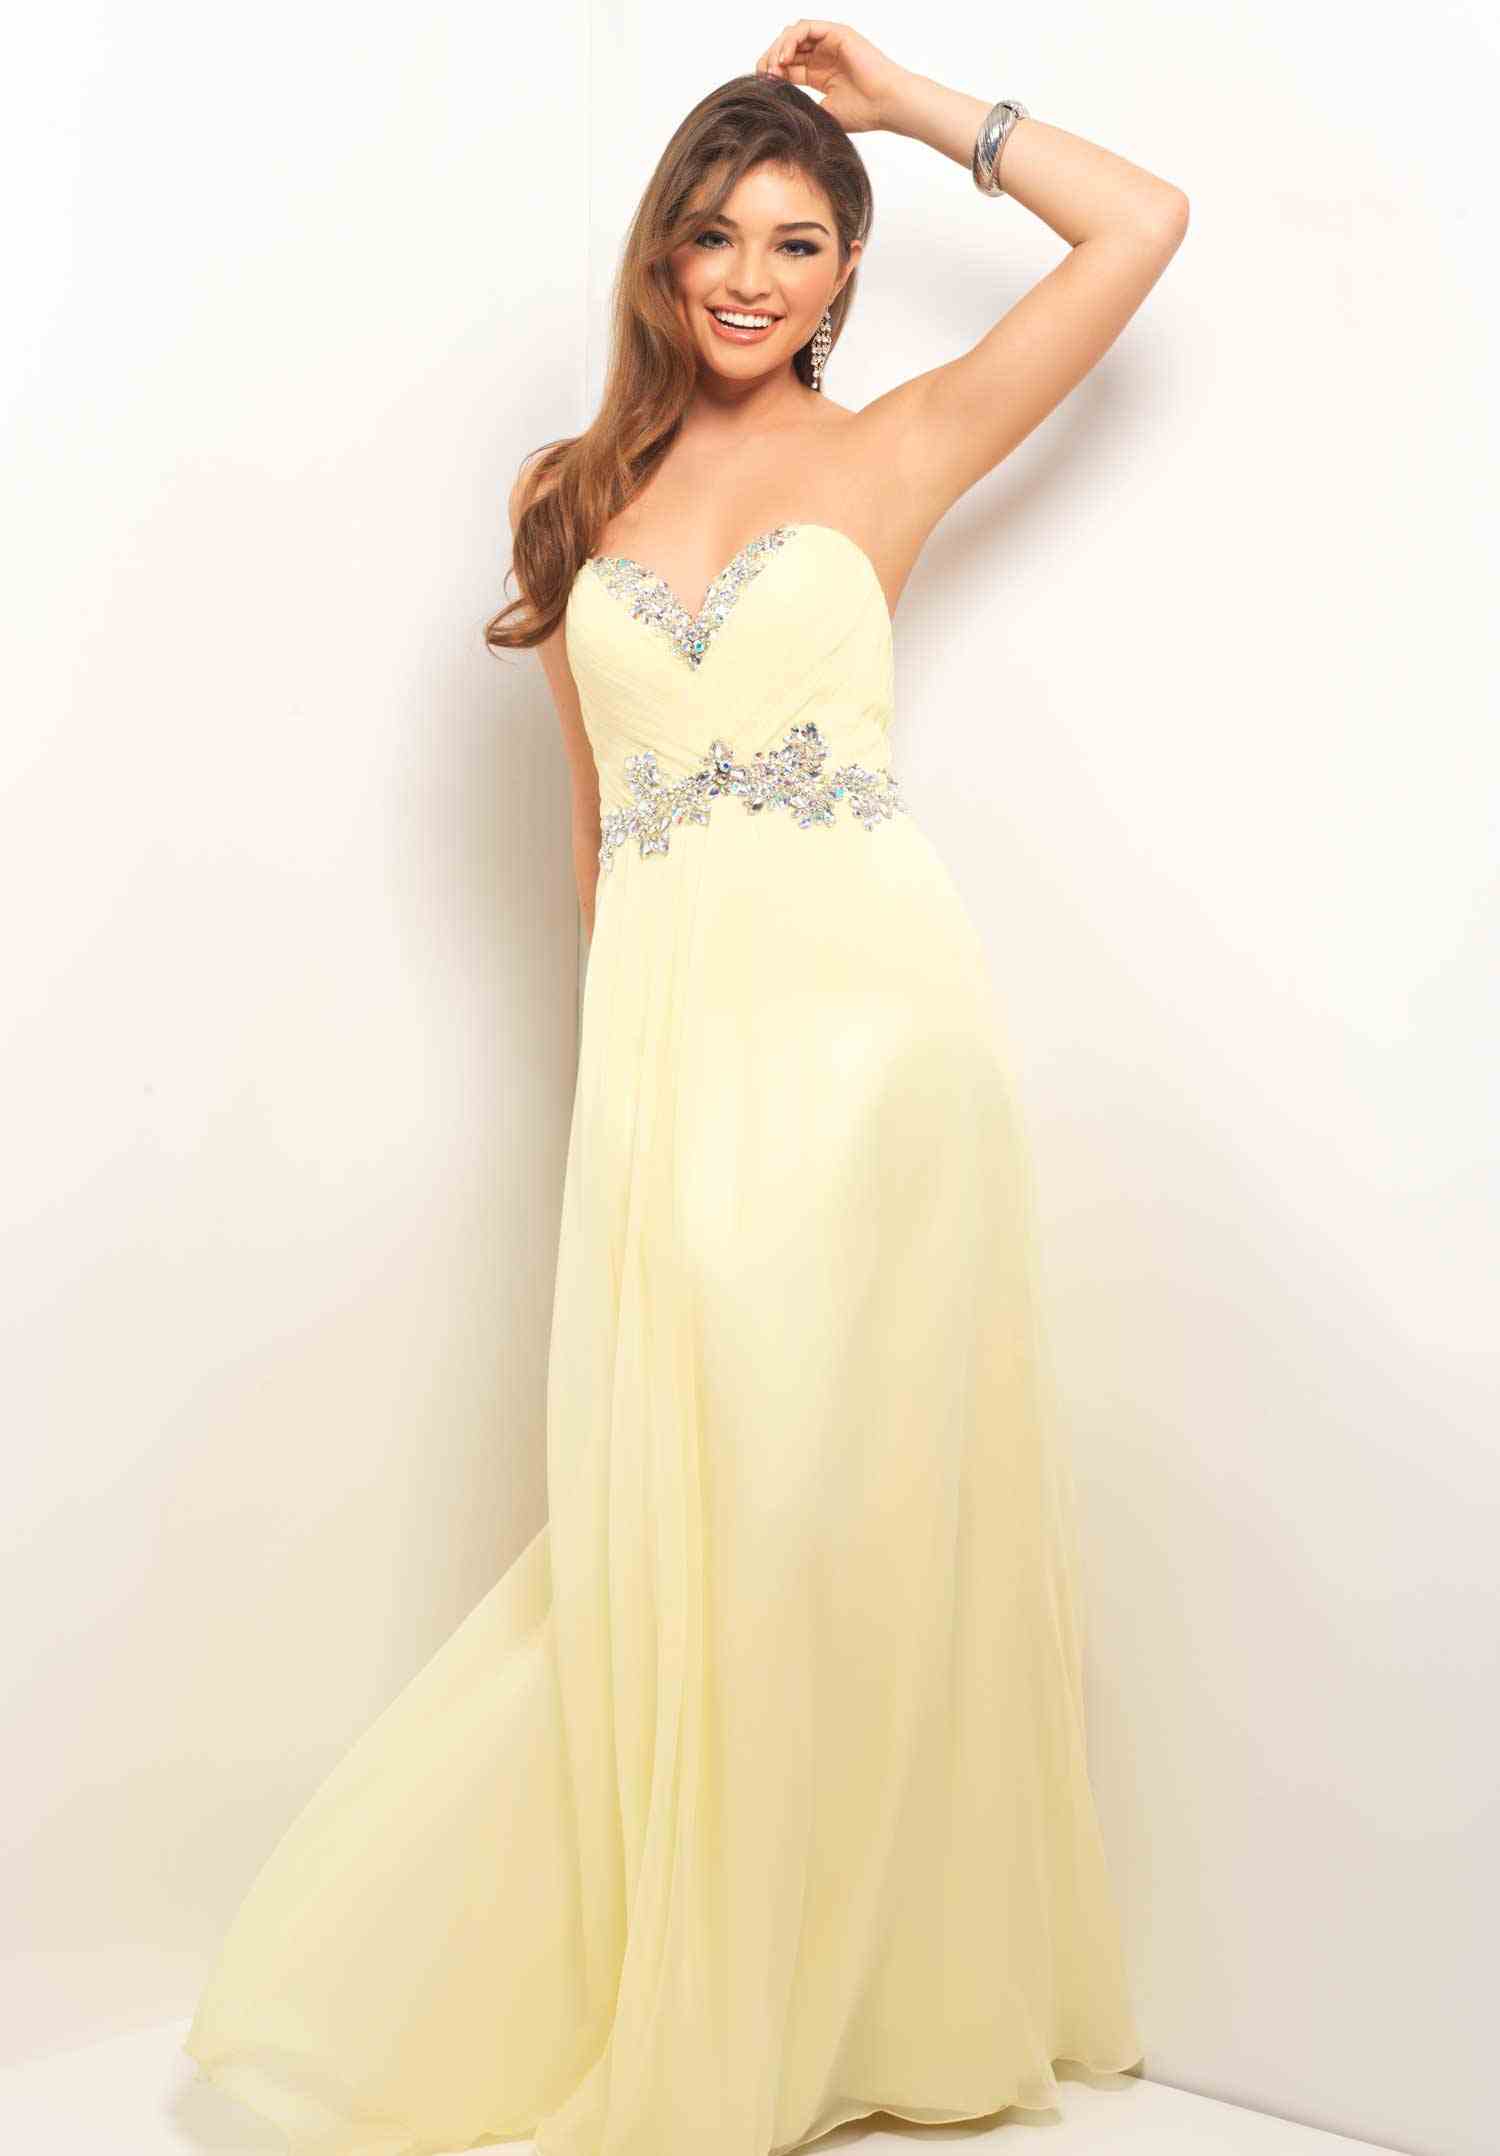 Blush 9616 Prom Dress guaranteed in stock